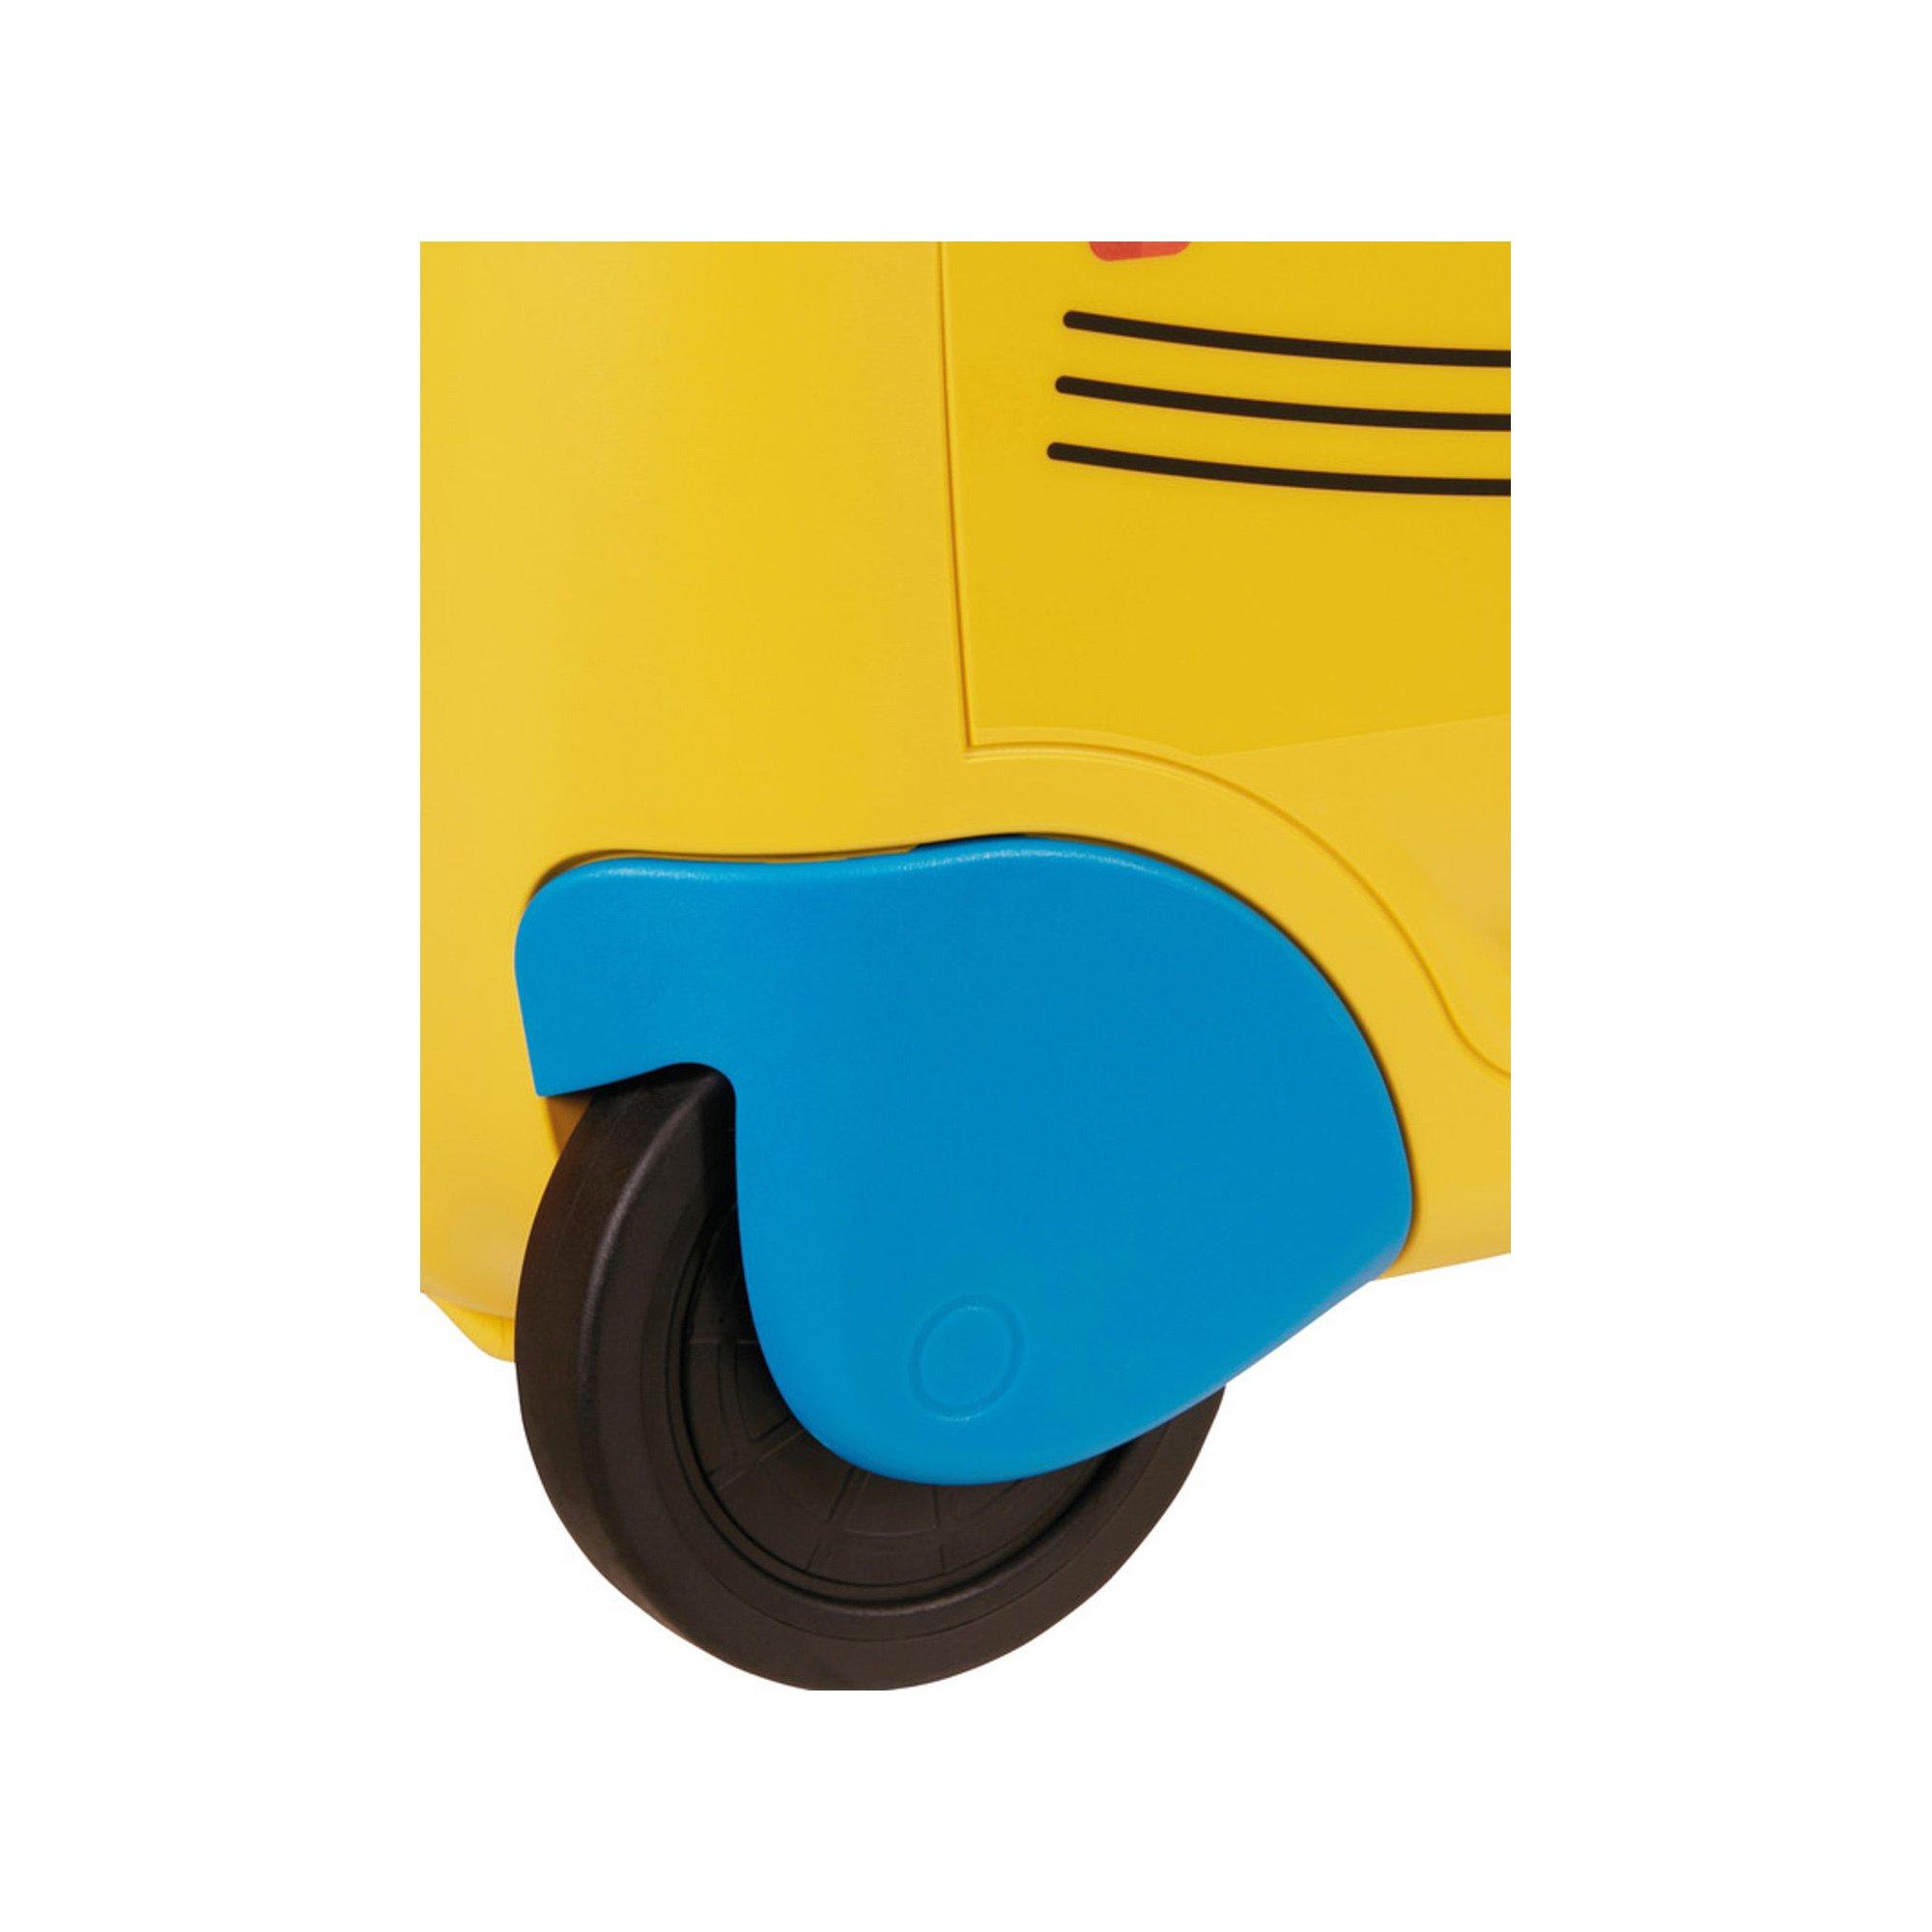 Samsonite 52.0cm, valise d'enfant Dream2go Bus 